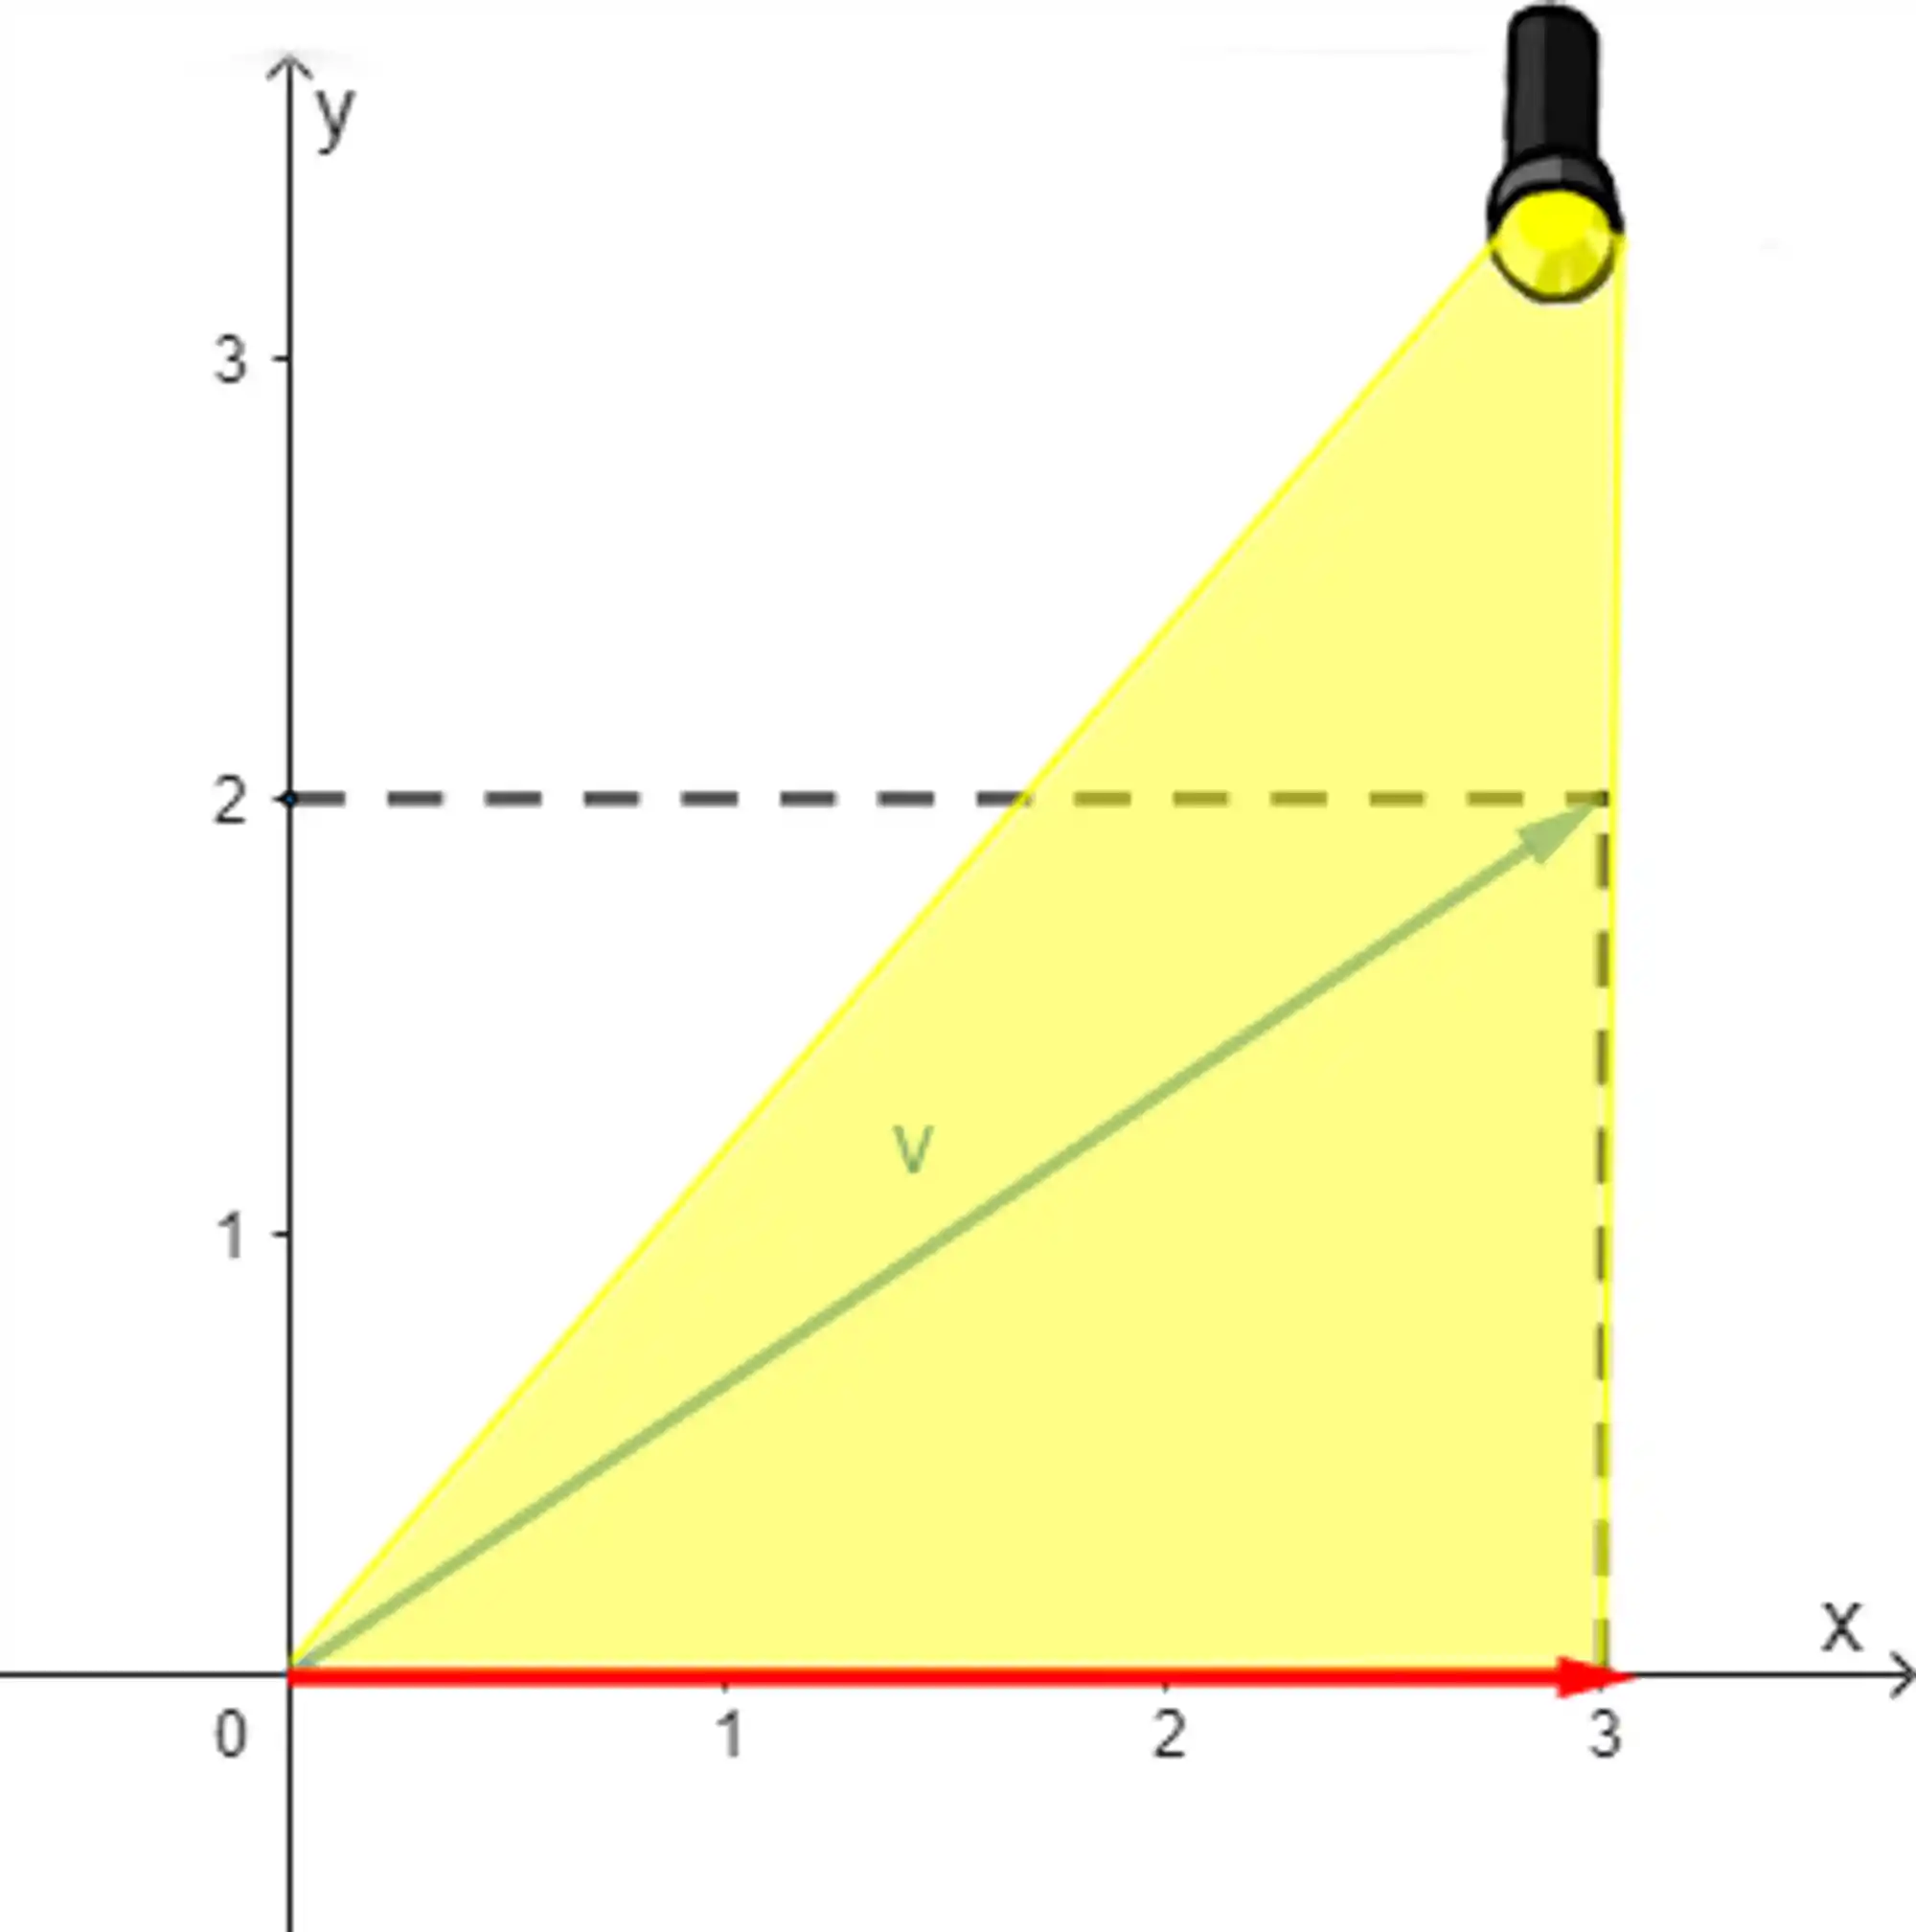 Projeção do vetor no eixo x.